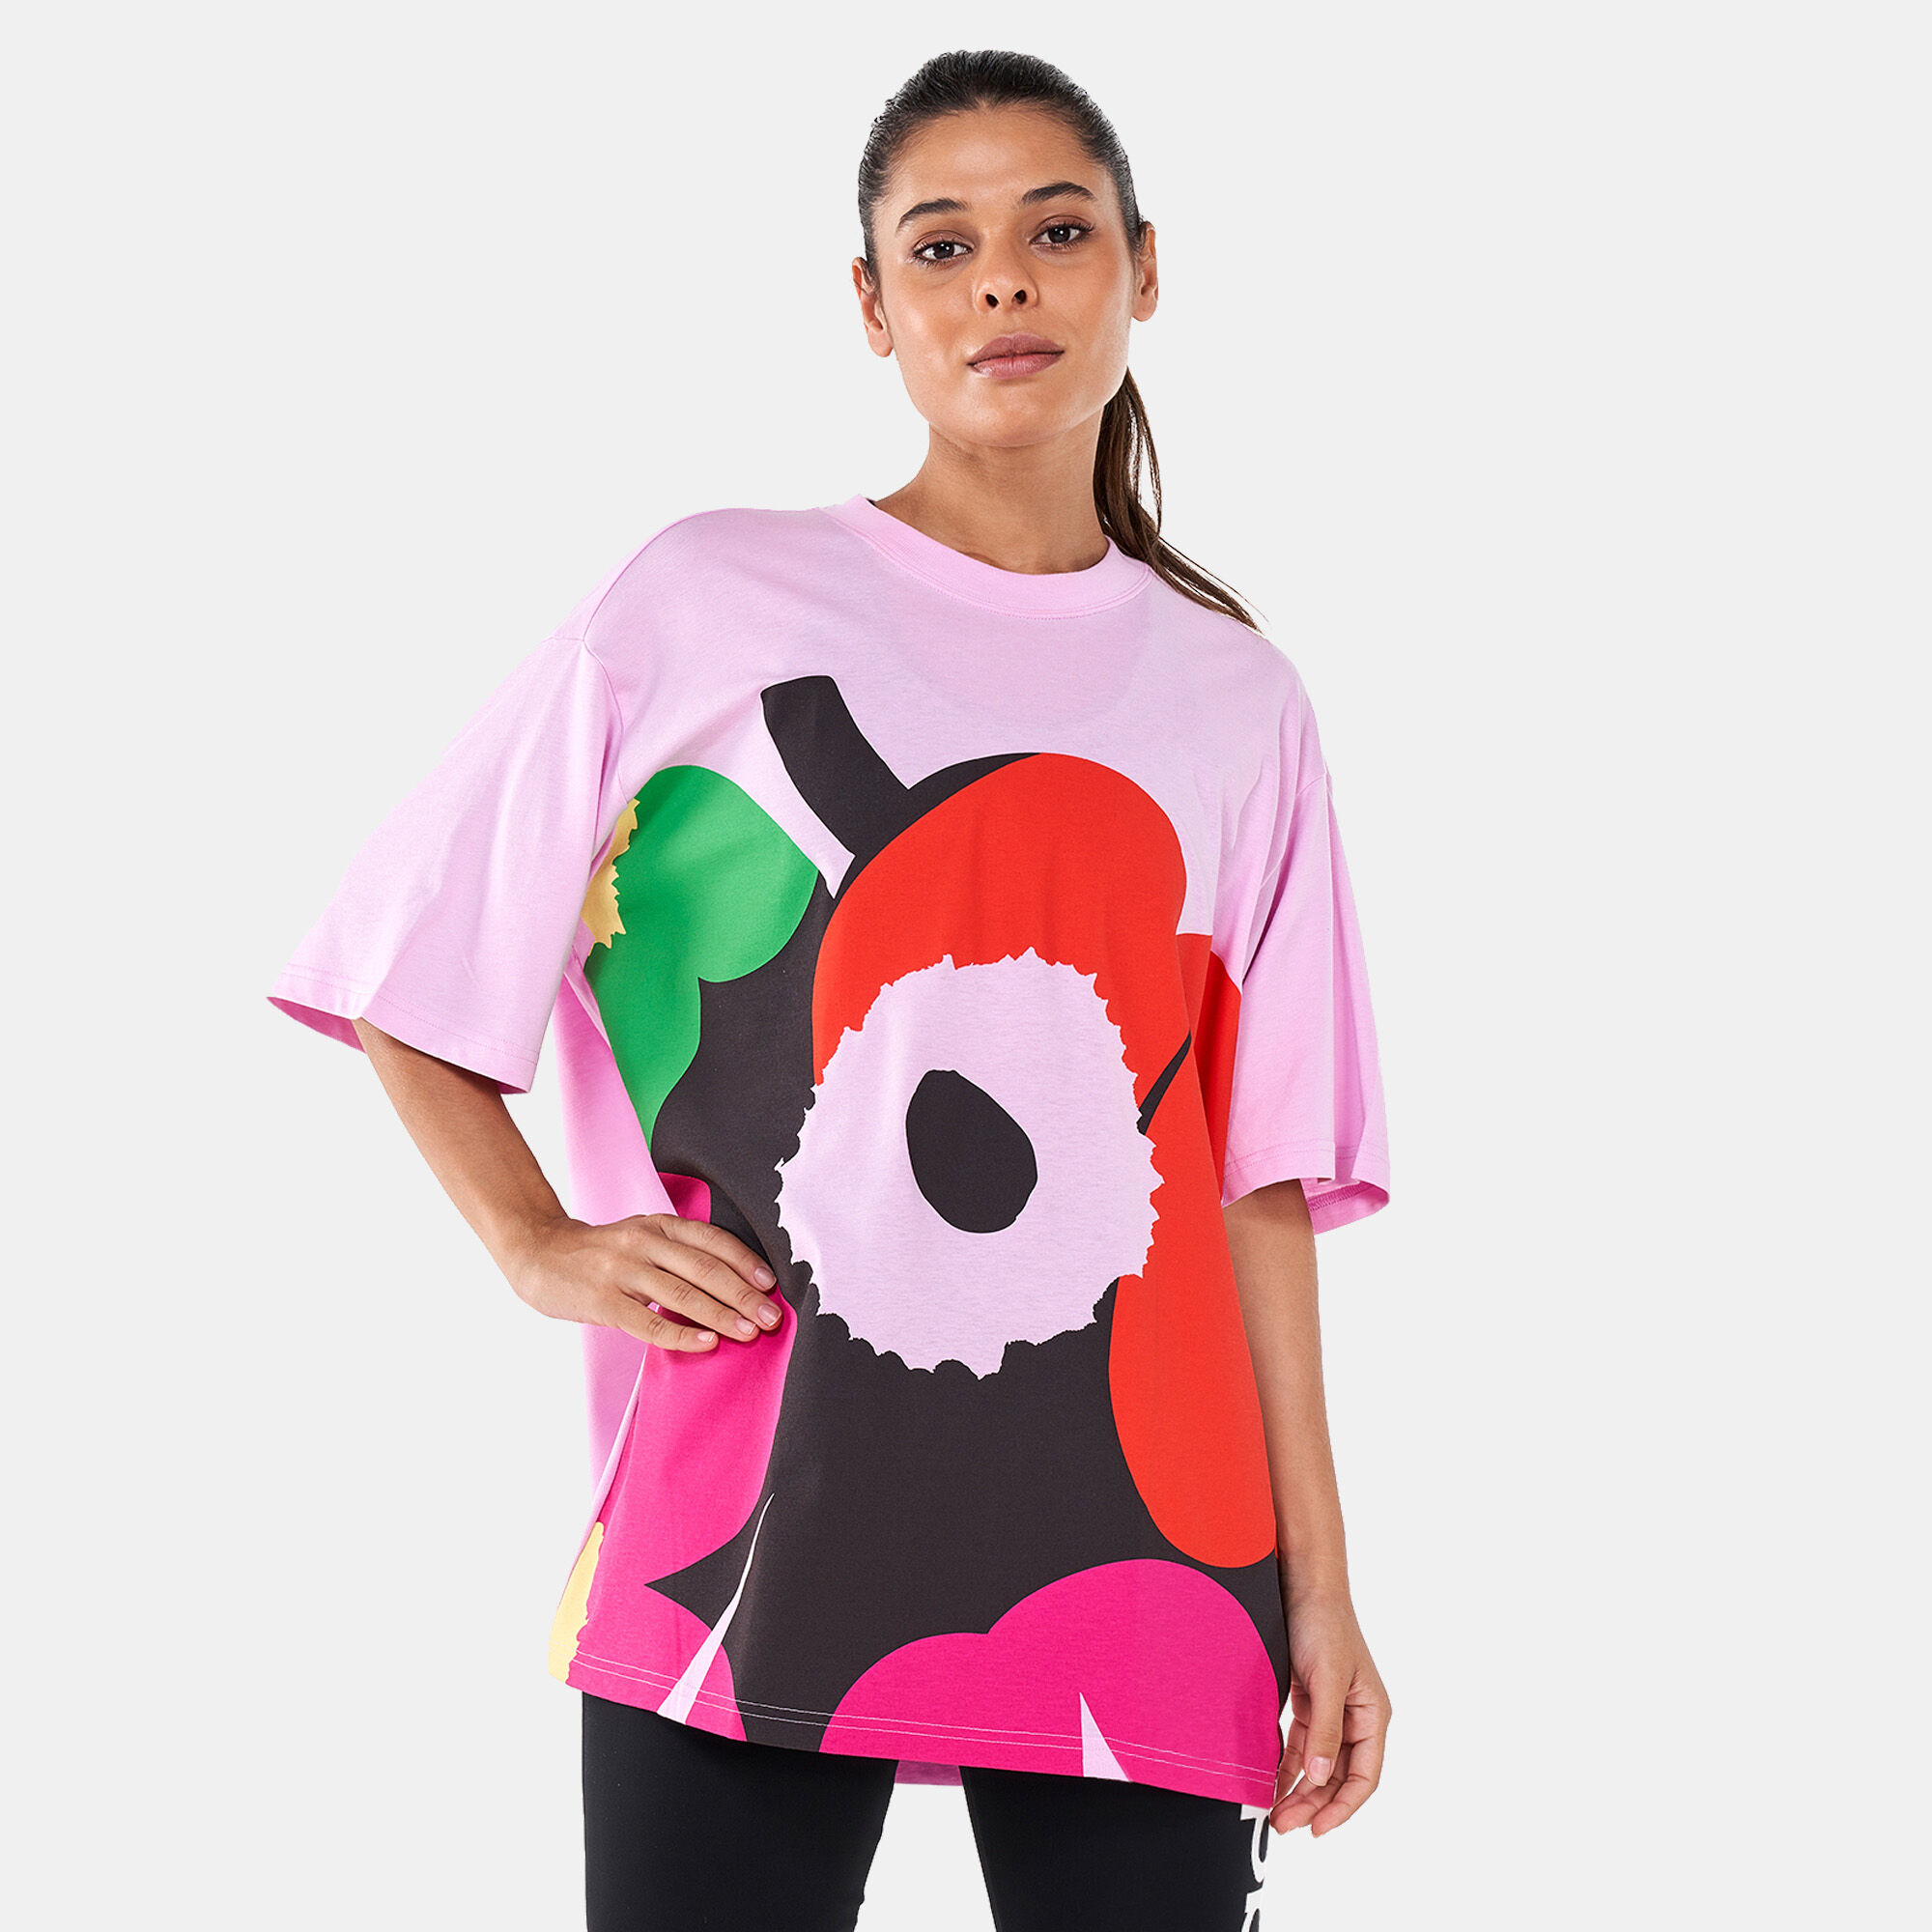 Indien Dårlig skæbne magasin adidas Women's x Marimekko Graphic T-Shirt 12 in Kuwait | SSS